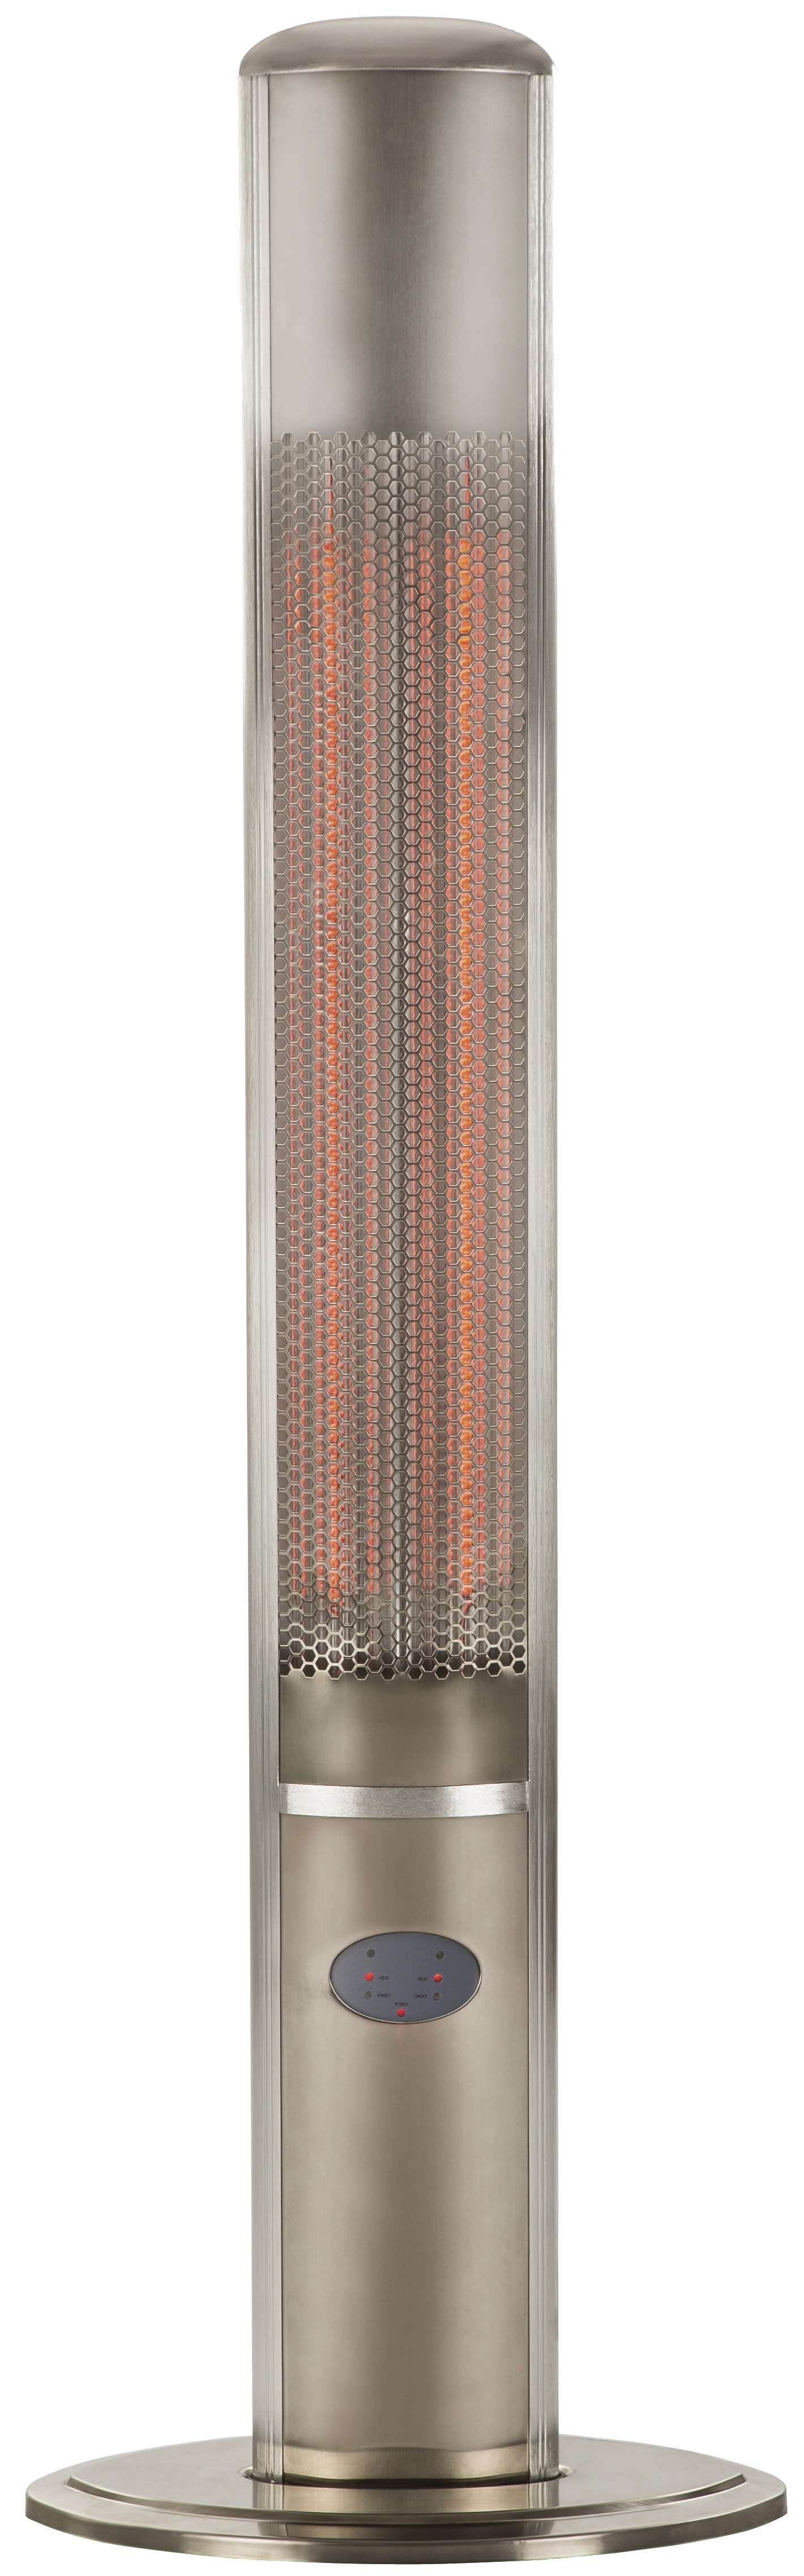 S&P - Colonne infrarouge, 2 lampes carbone 900/1800 W, HT 159,5 cm, cde à distance